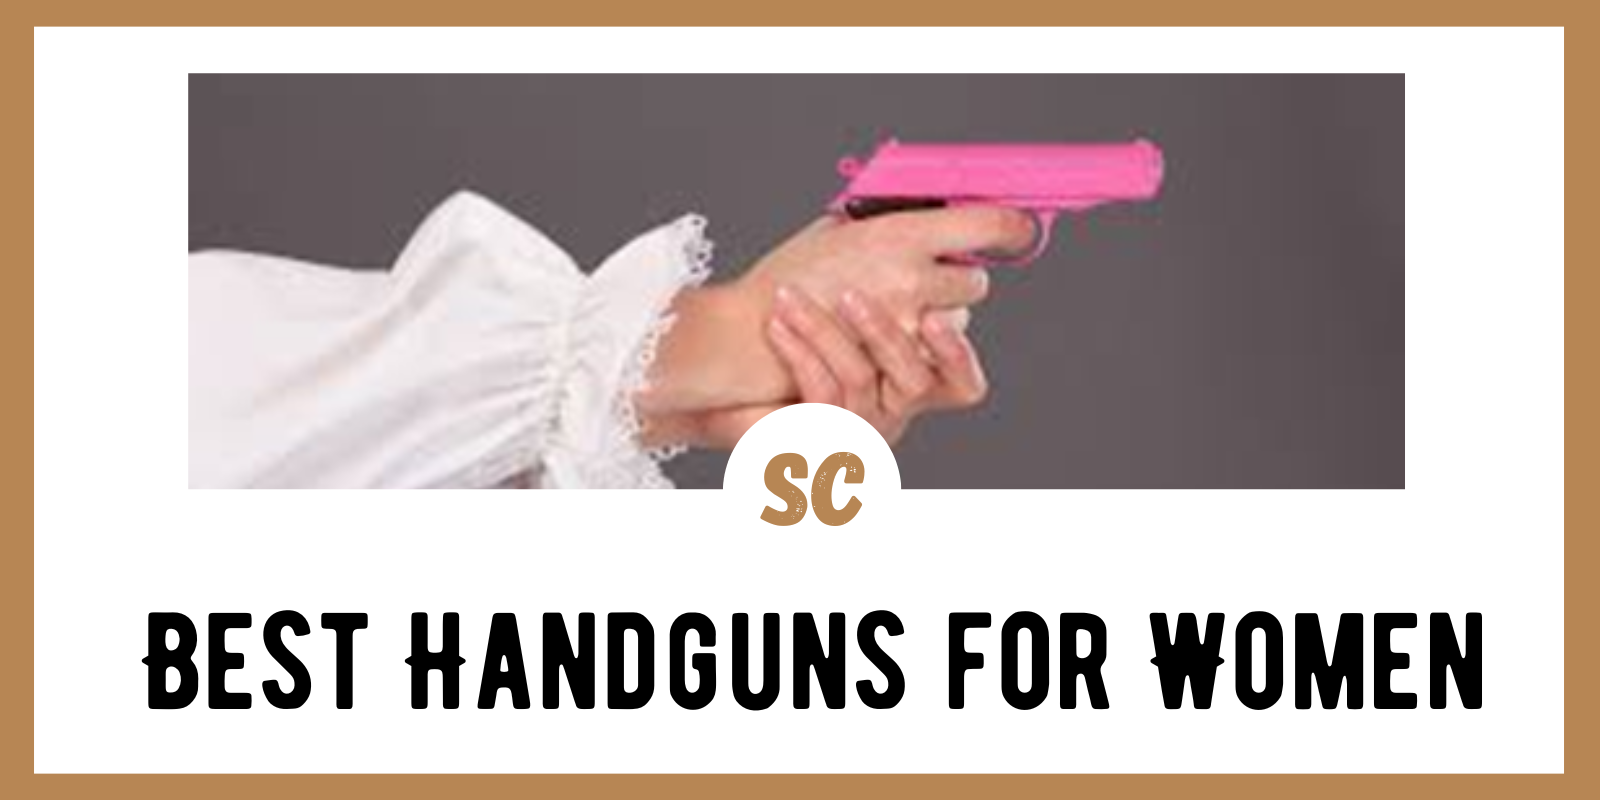 12 Best Handguns for Women